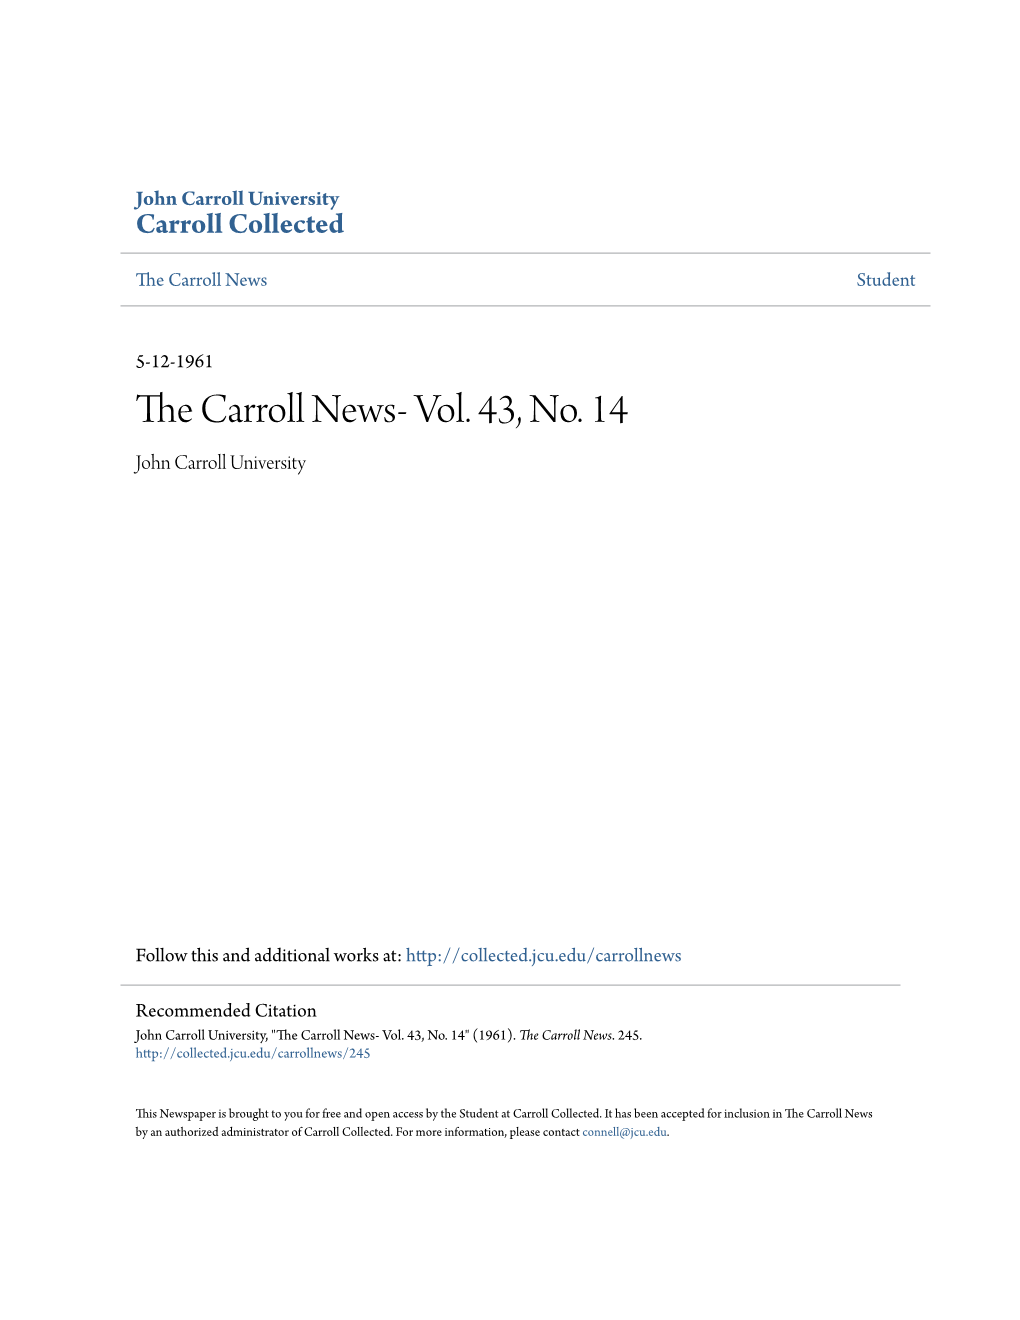 The Carroll News- Vol. 43, No. 14